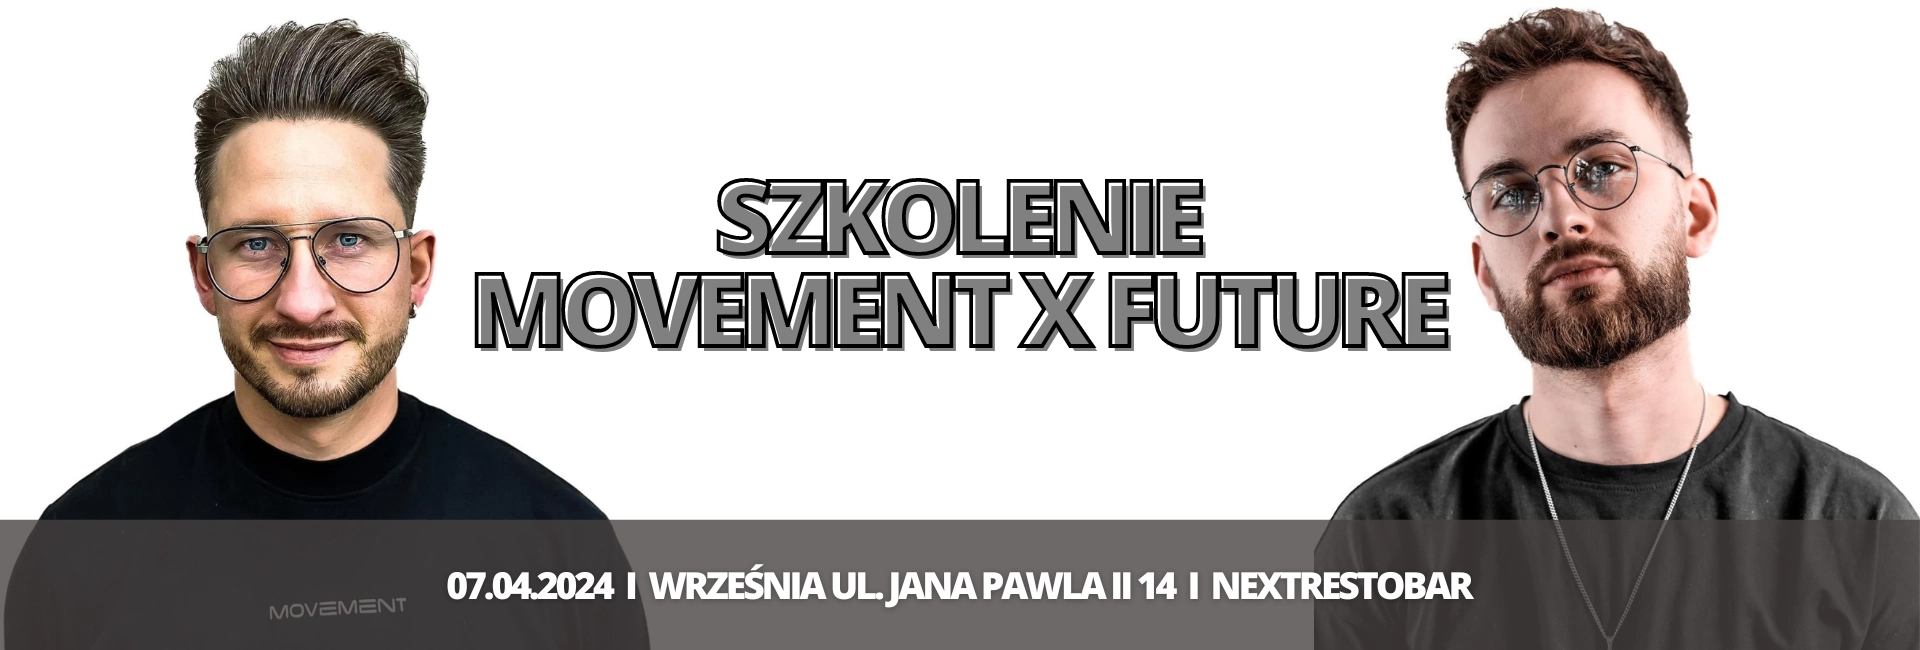 Movement-x-future